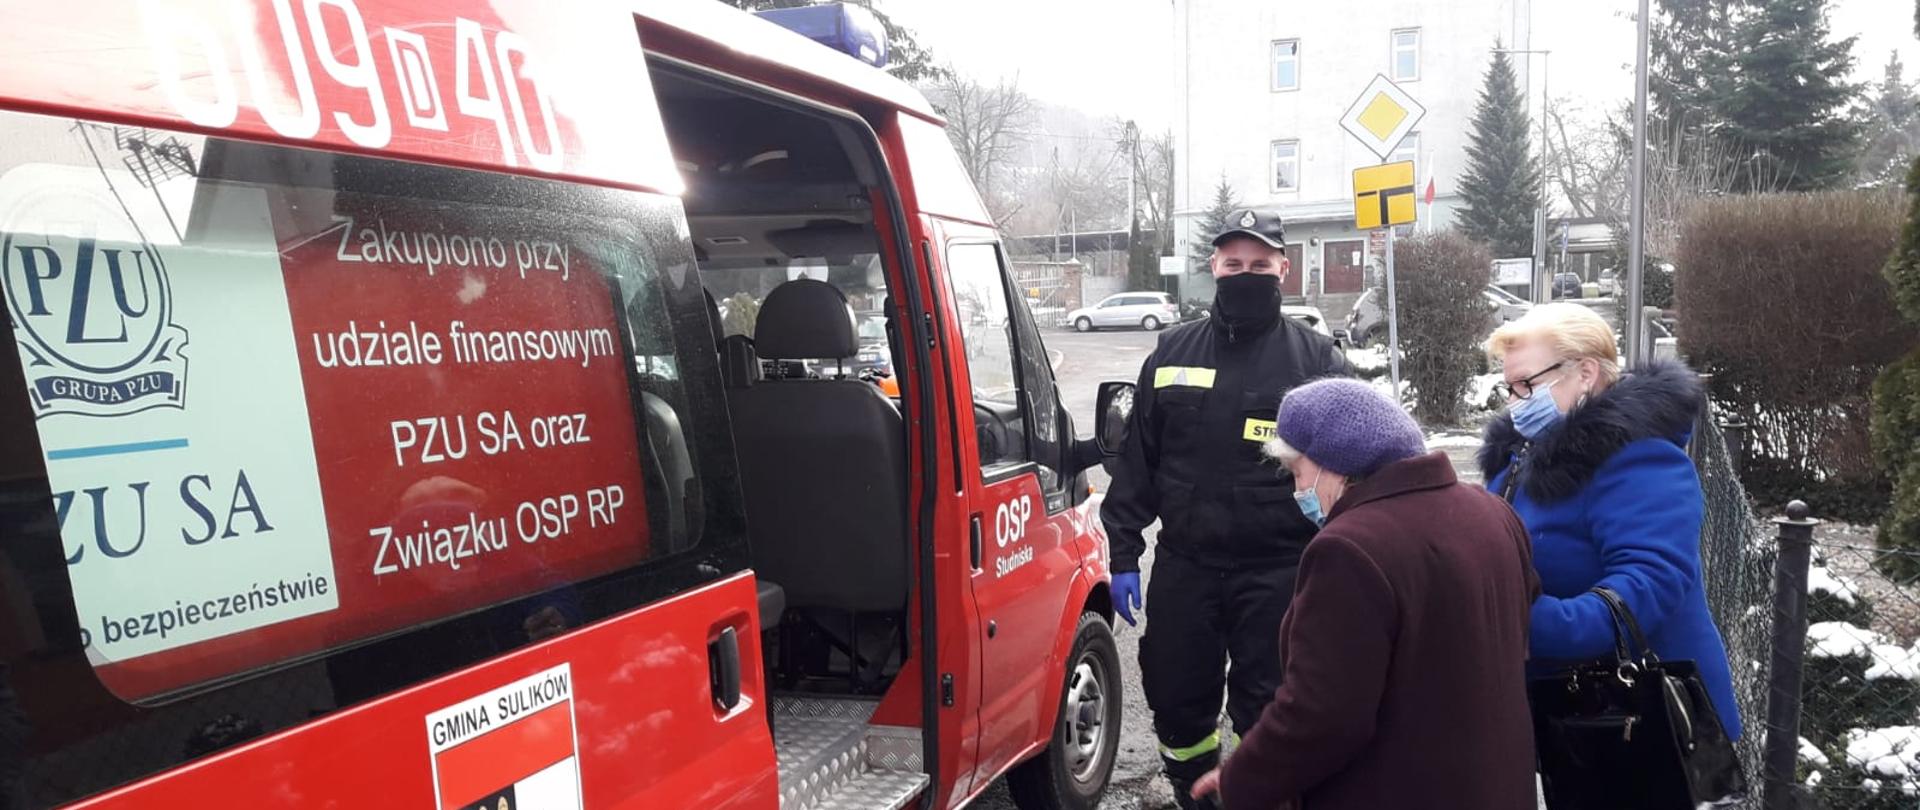 Samochód typu bus należący do OSP z numerem operacyjnym 609D40. Otwarte drzwi boczne na których znajduje się herb gminy Sulików. Dwie kobiety wsiadają do pojazdu. Obok stoi strażak OSP.